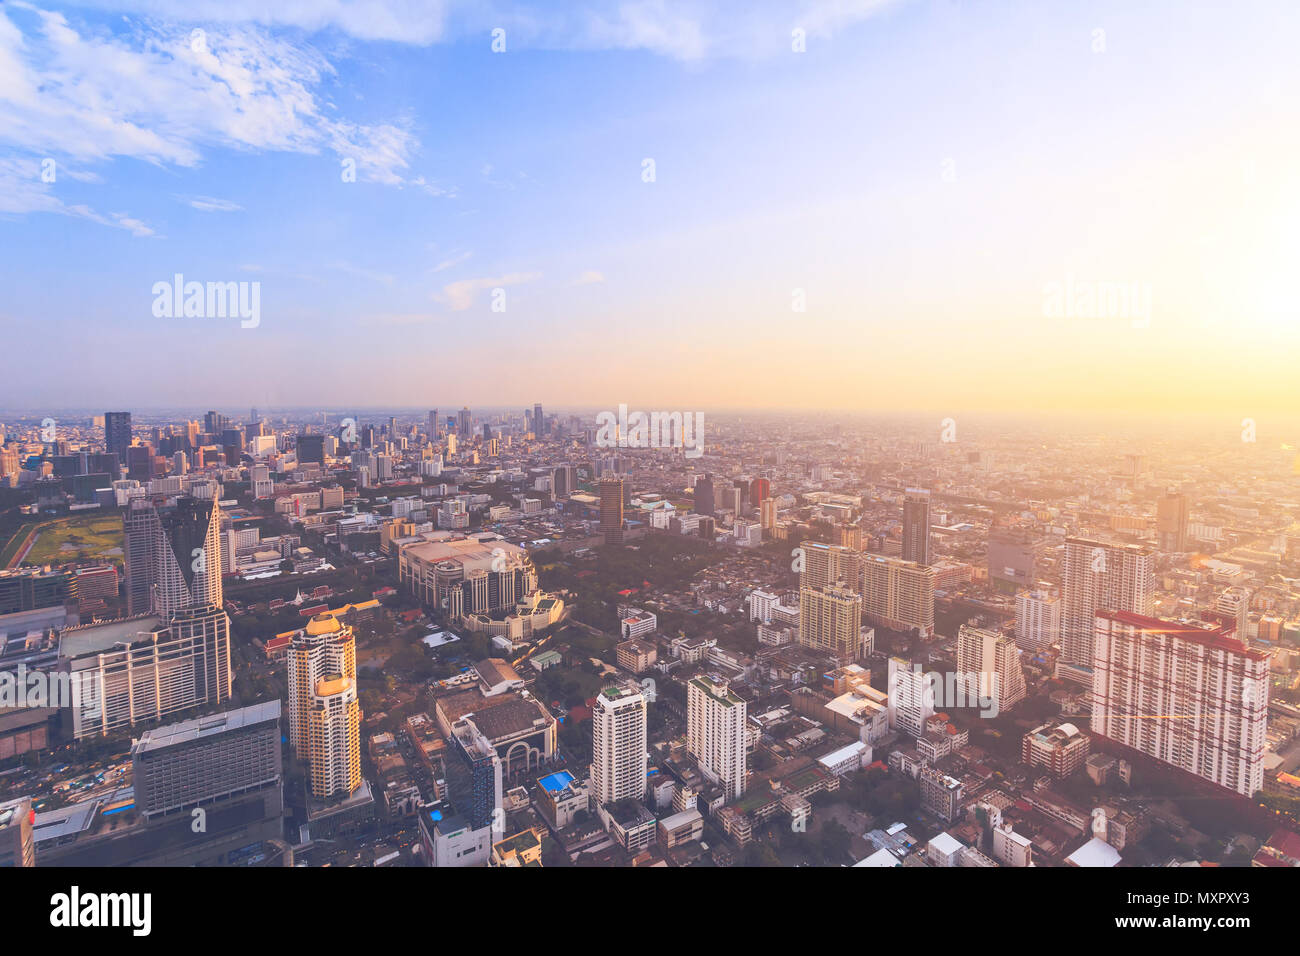 La splendida vista panoramica di Bangkok, la capitale e la città più popolosa del Regno di Thailandia. Incredibile paesaggio i moderni grattacieli, nelle strade e nei luoghi pubblici. Riprese aeree. Foto Stock